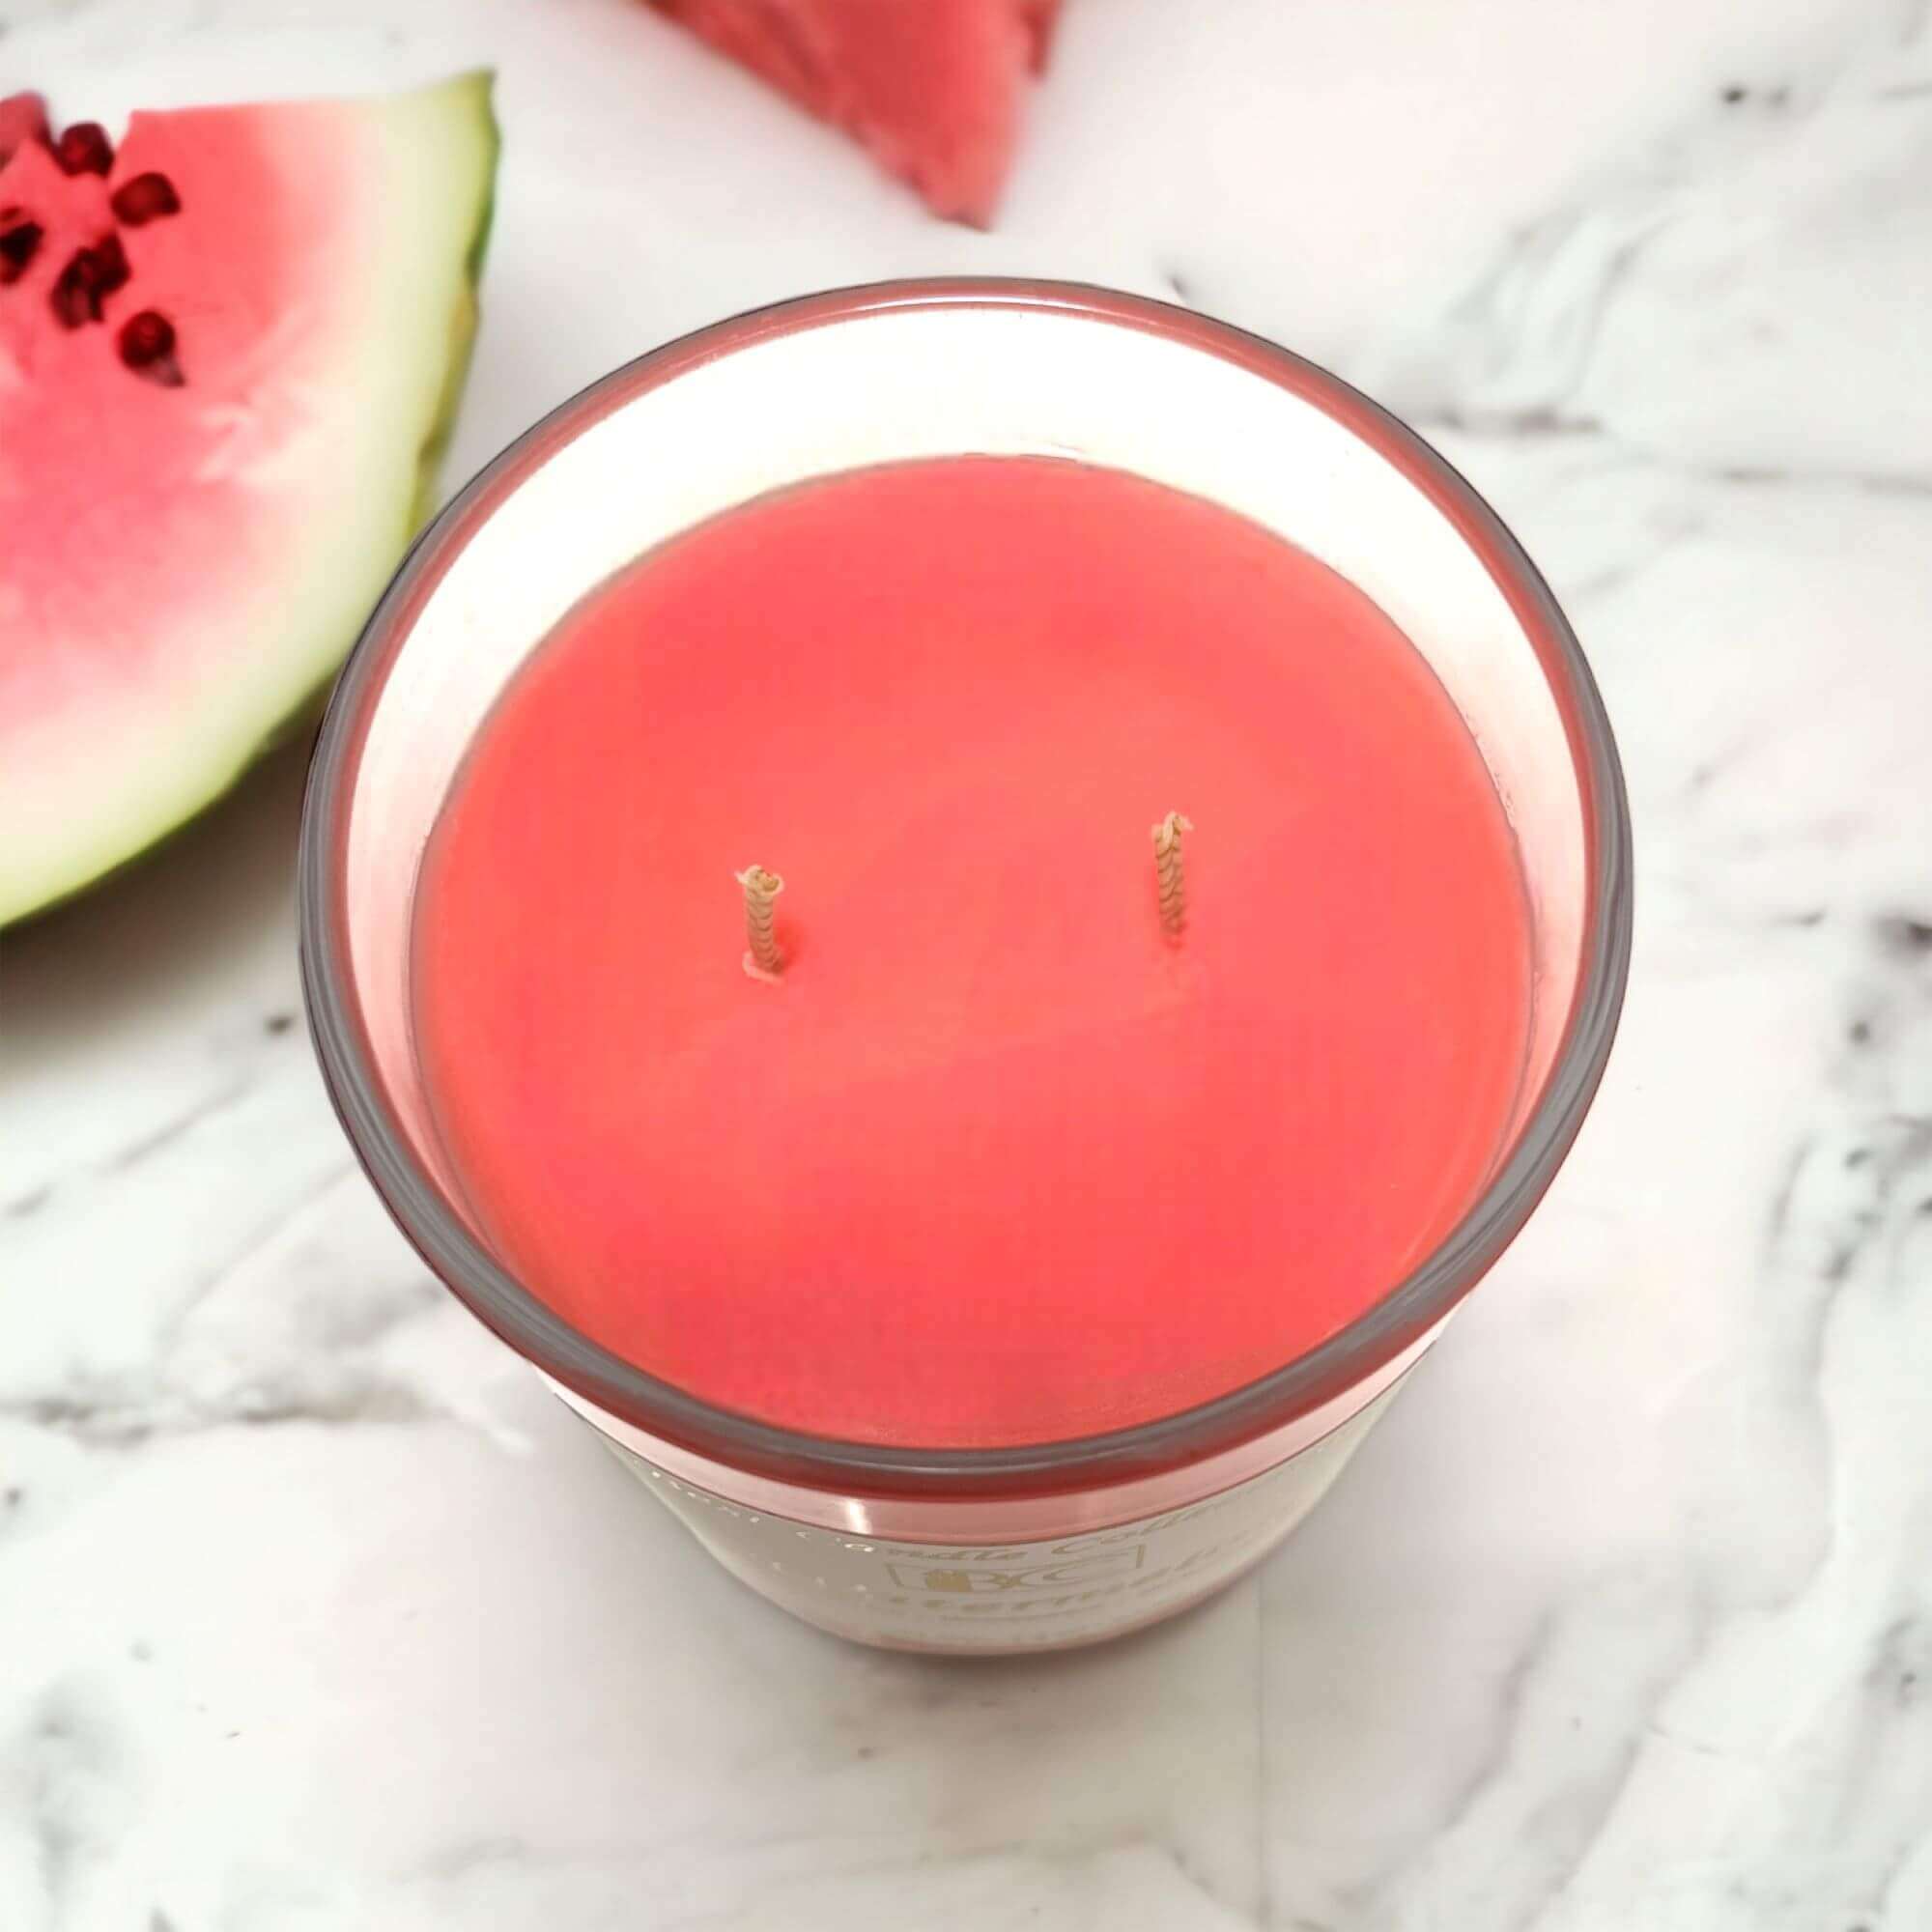 Watermelon 12 oz glass jar